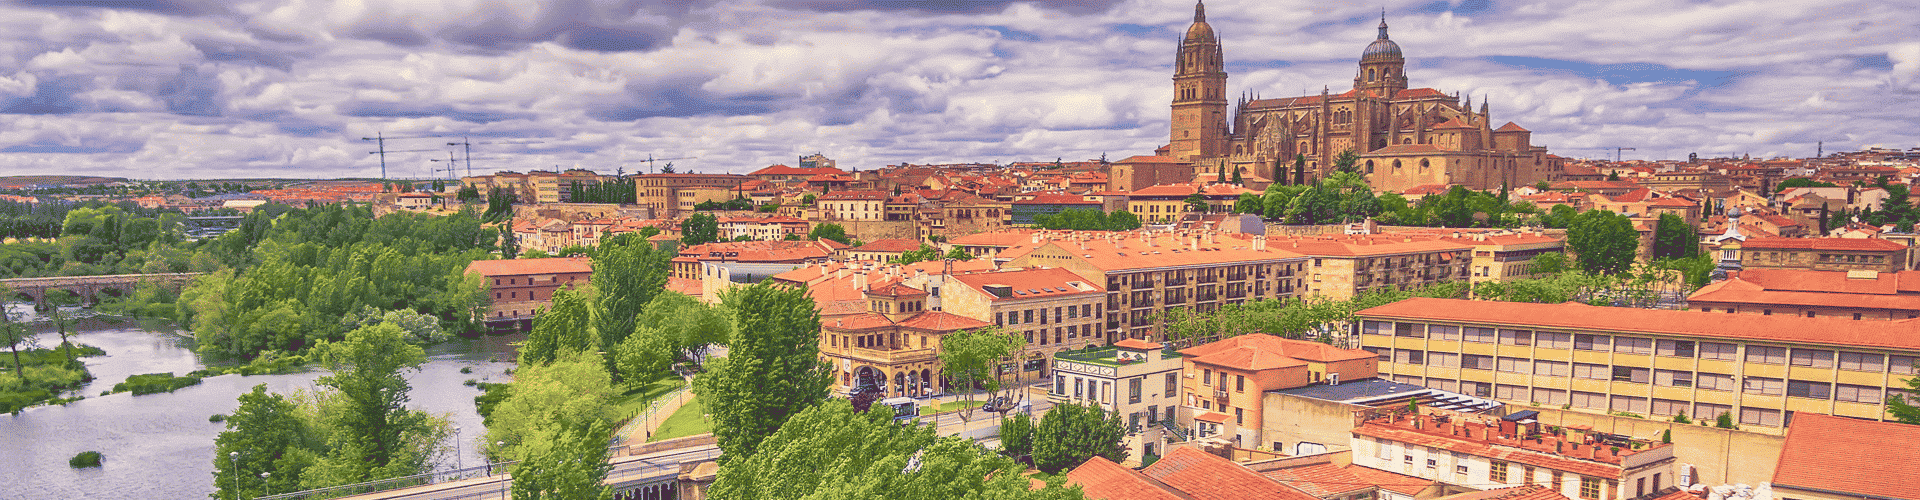 Salamanca Skyline